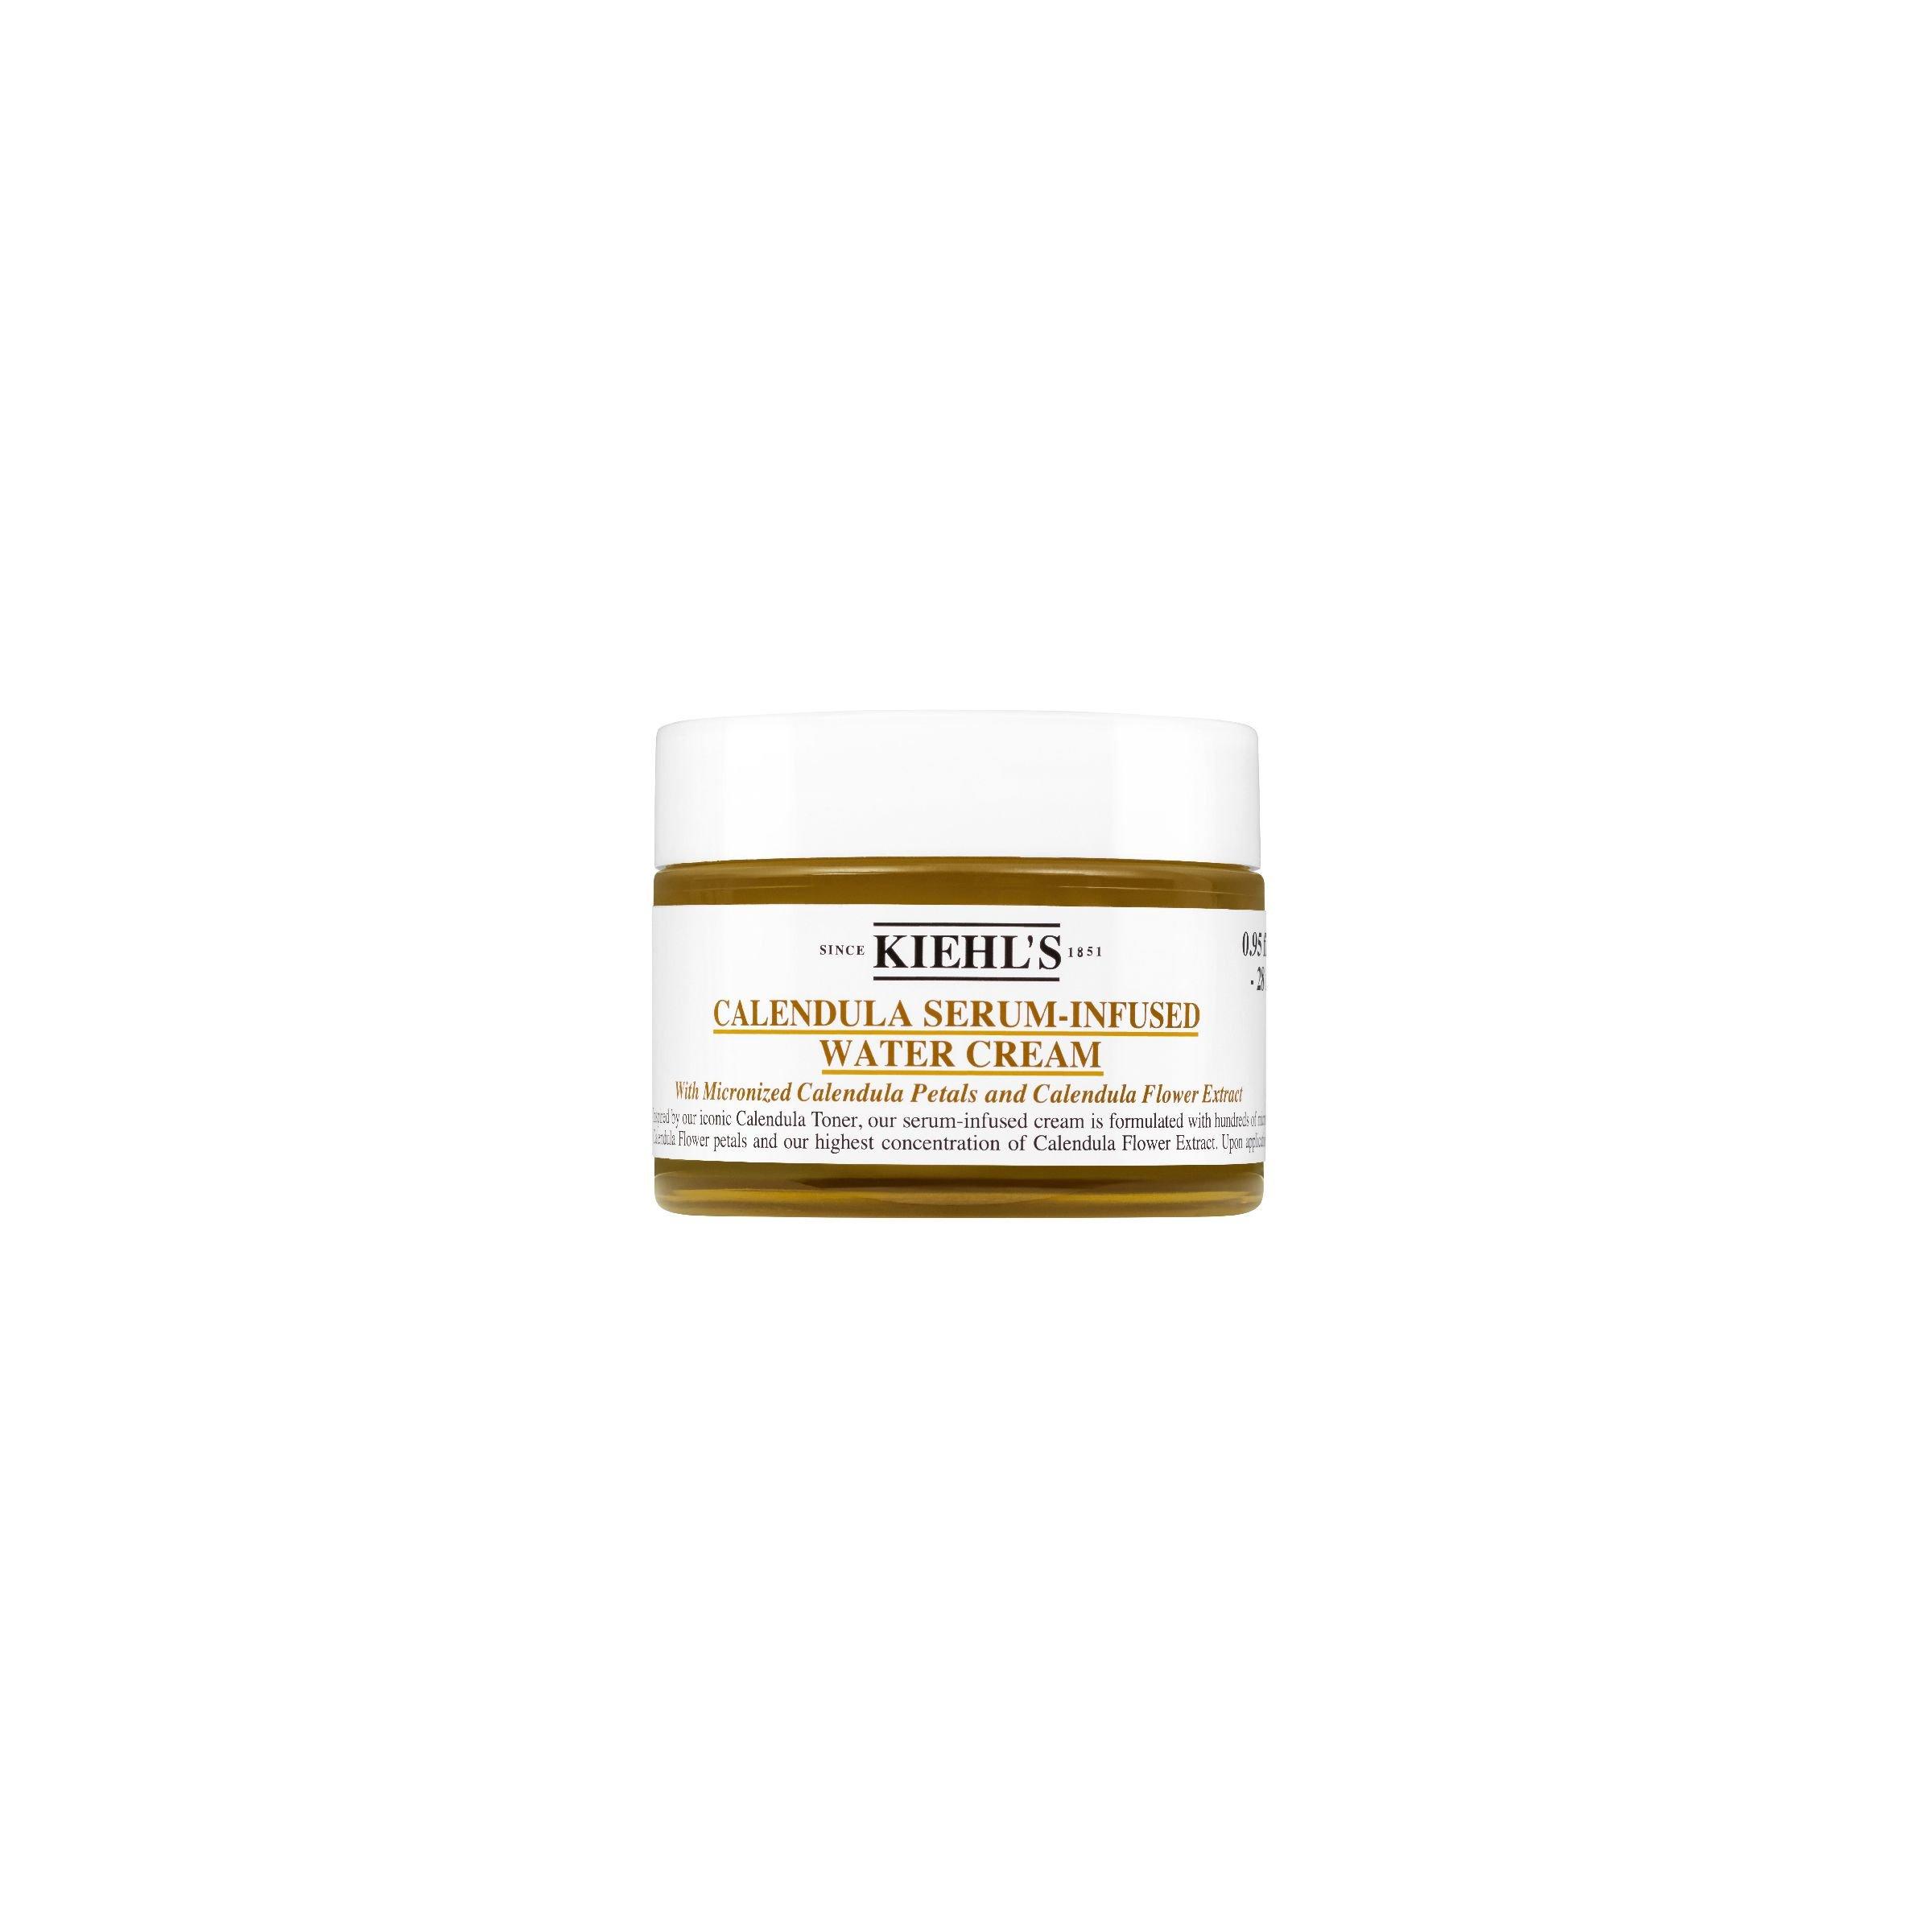 Image of Kiehl's Calendula Serum-Infused Water Cream - Federleichte Gesichtscreme mit konzentriertem Calendula-Serum - g#277/28ml